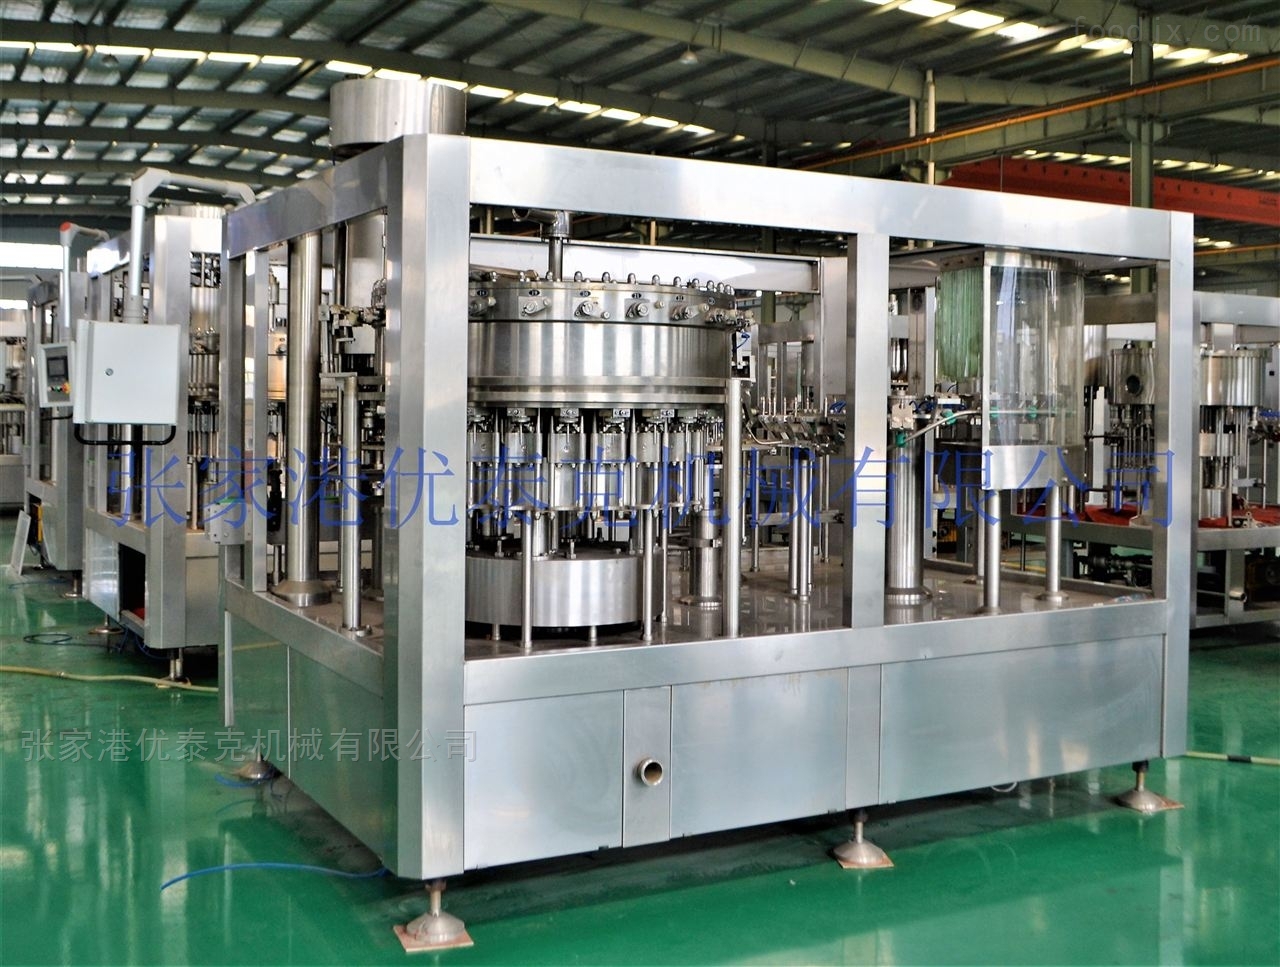 
全国轻工leyu70vip机械标准化技术委员会制酒饮料机械分技术委员会在河南